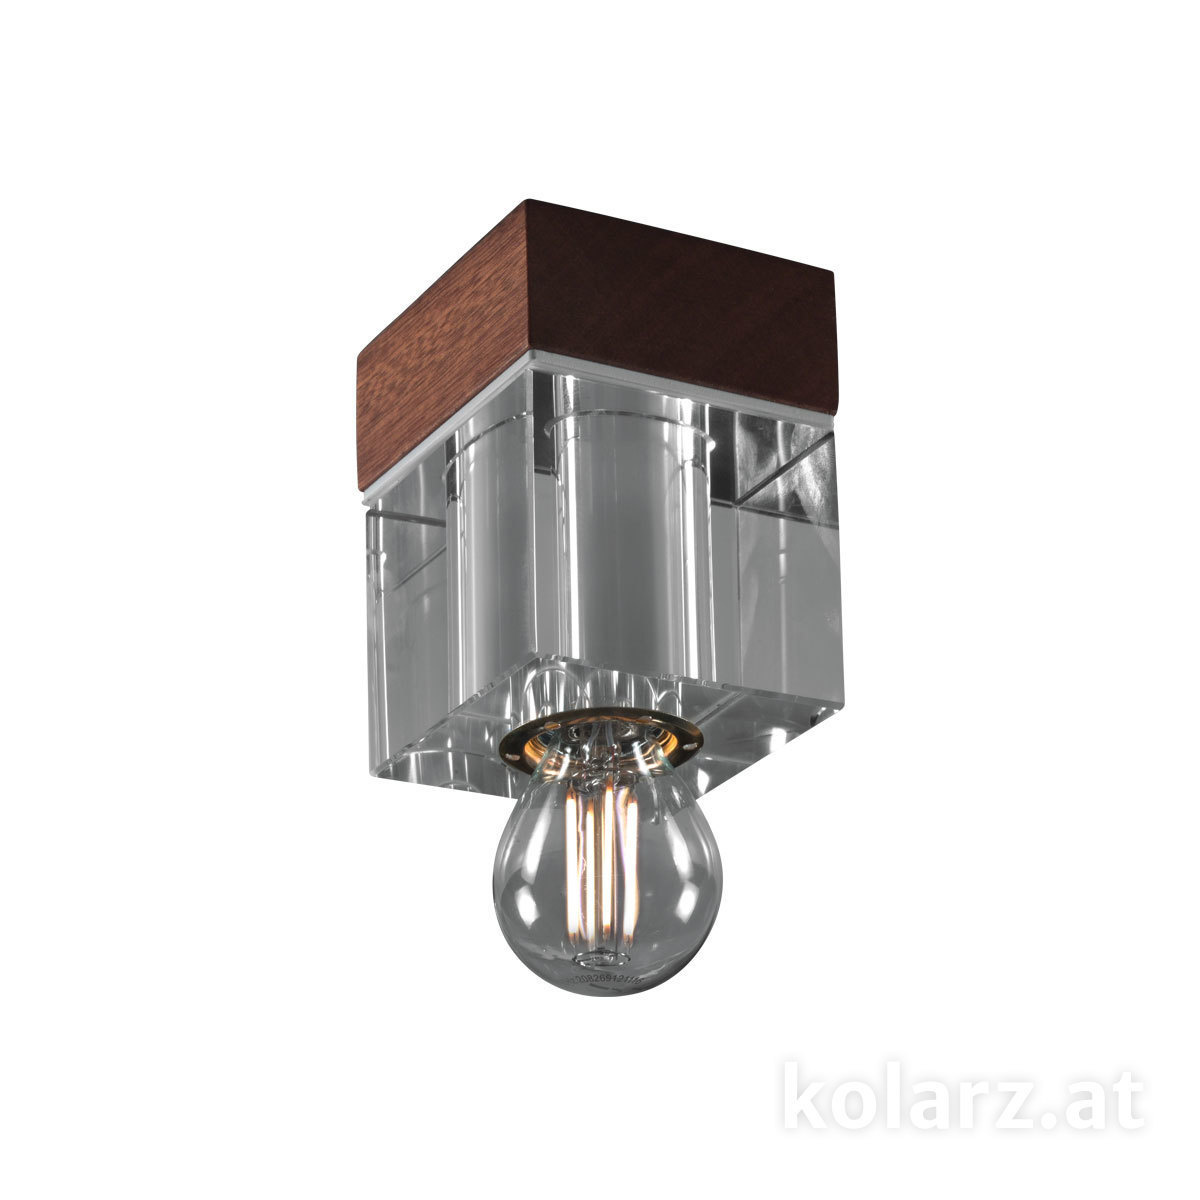 KOLARZ Leuchten Sonderangebote - Sale bei Deckenleuchten & Deckenlampen von KOLARZ Leuchten Deckenleuchte RIVIERA 5200.10100